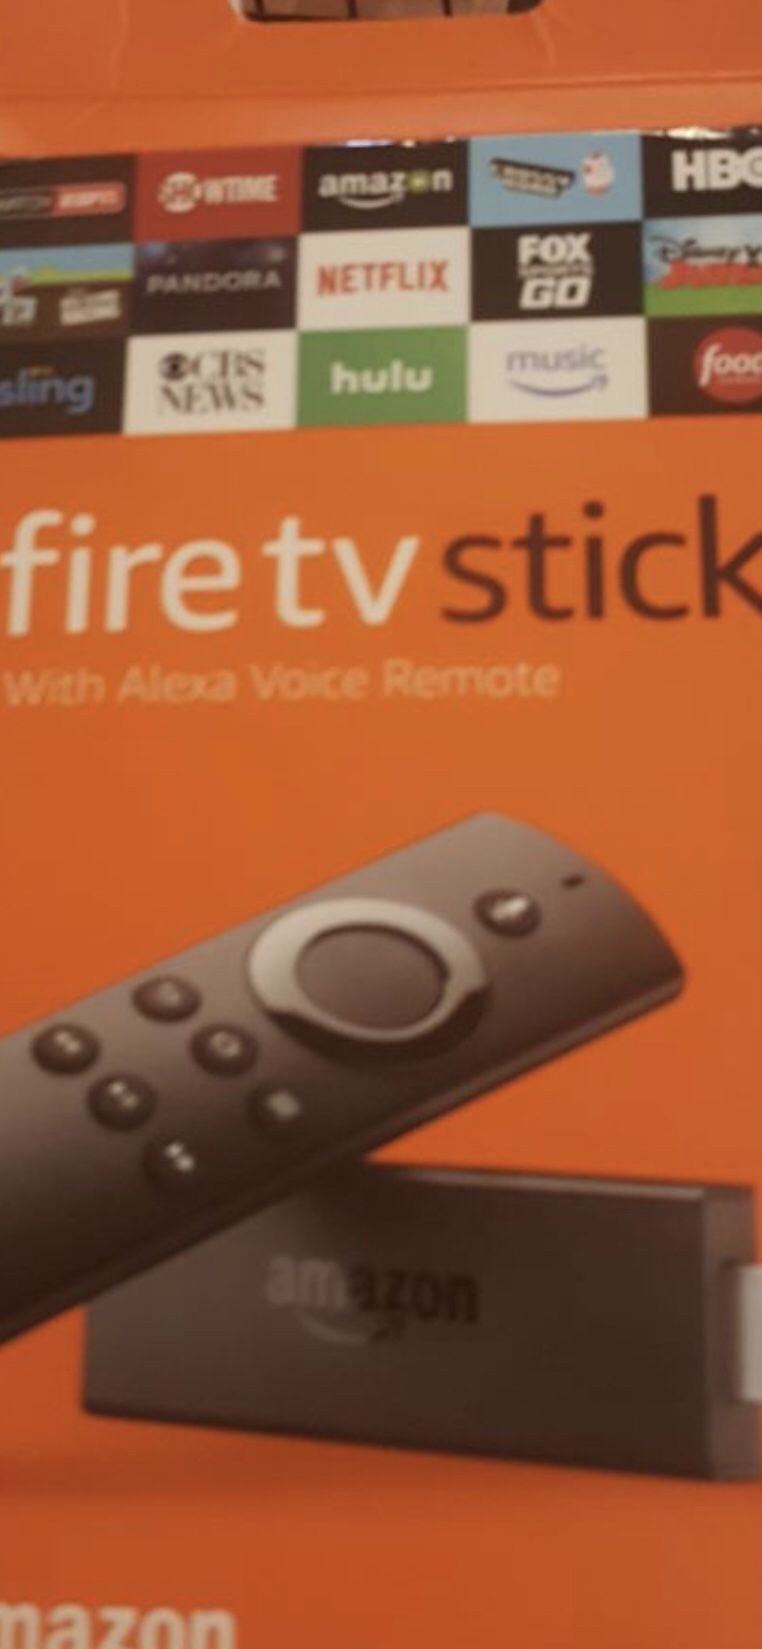 Fire Tv stick